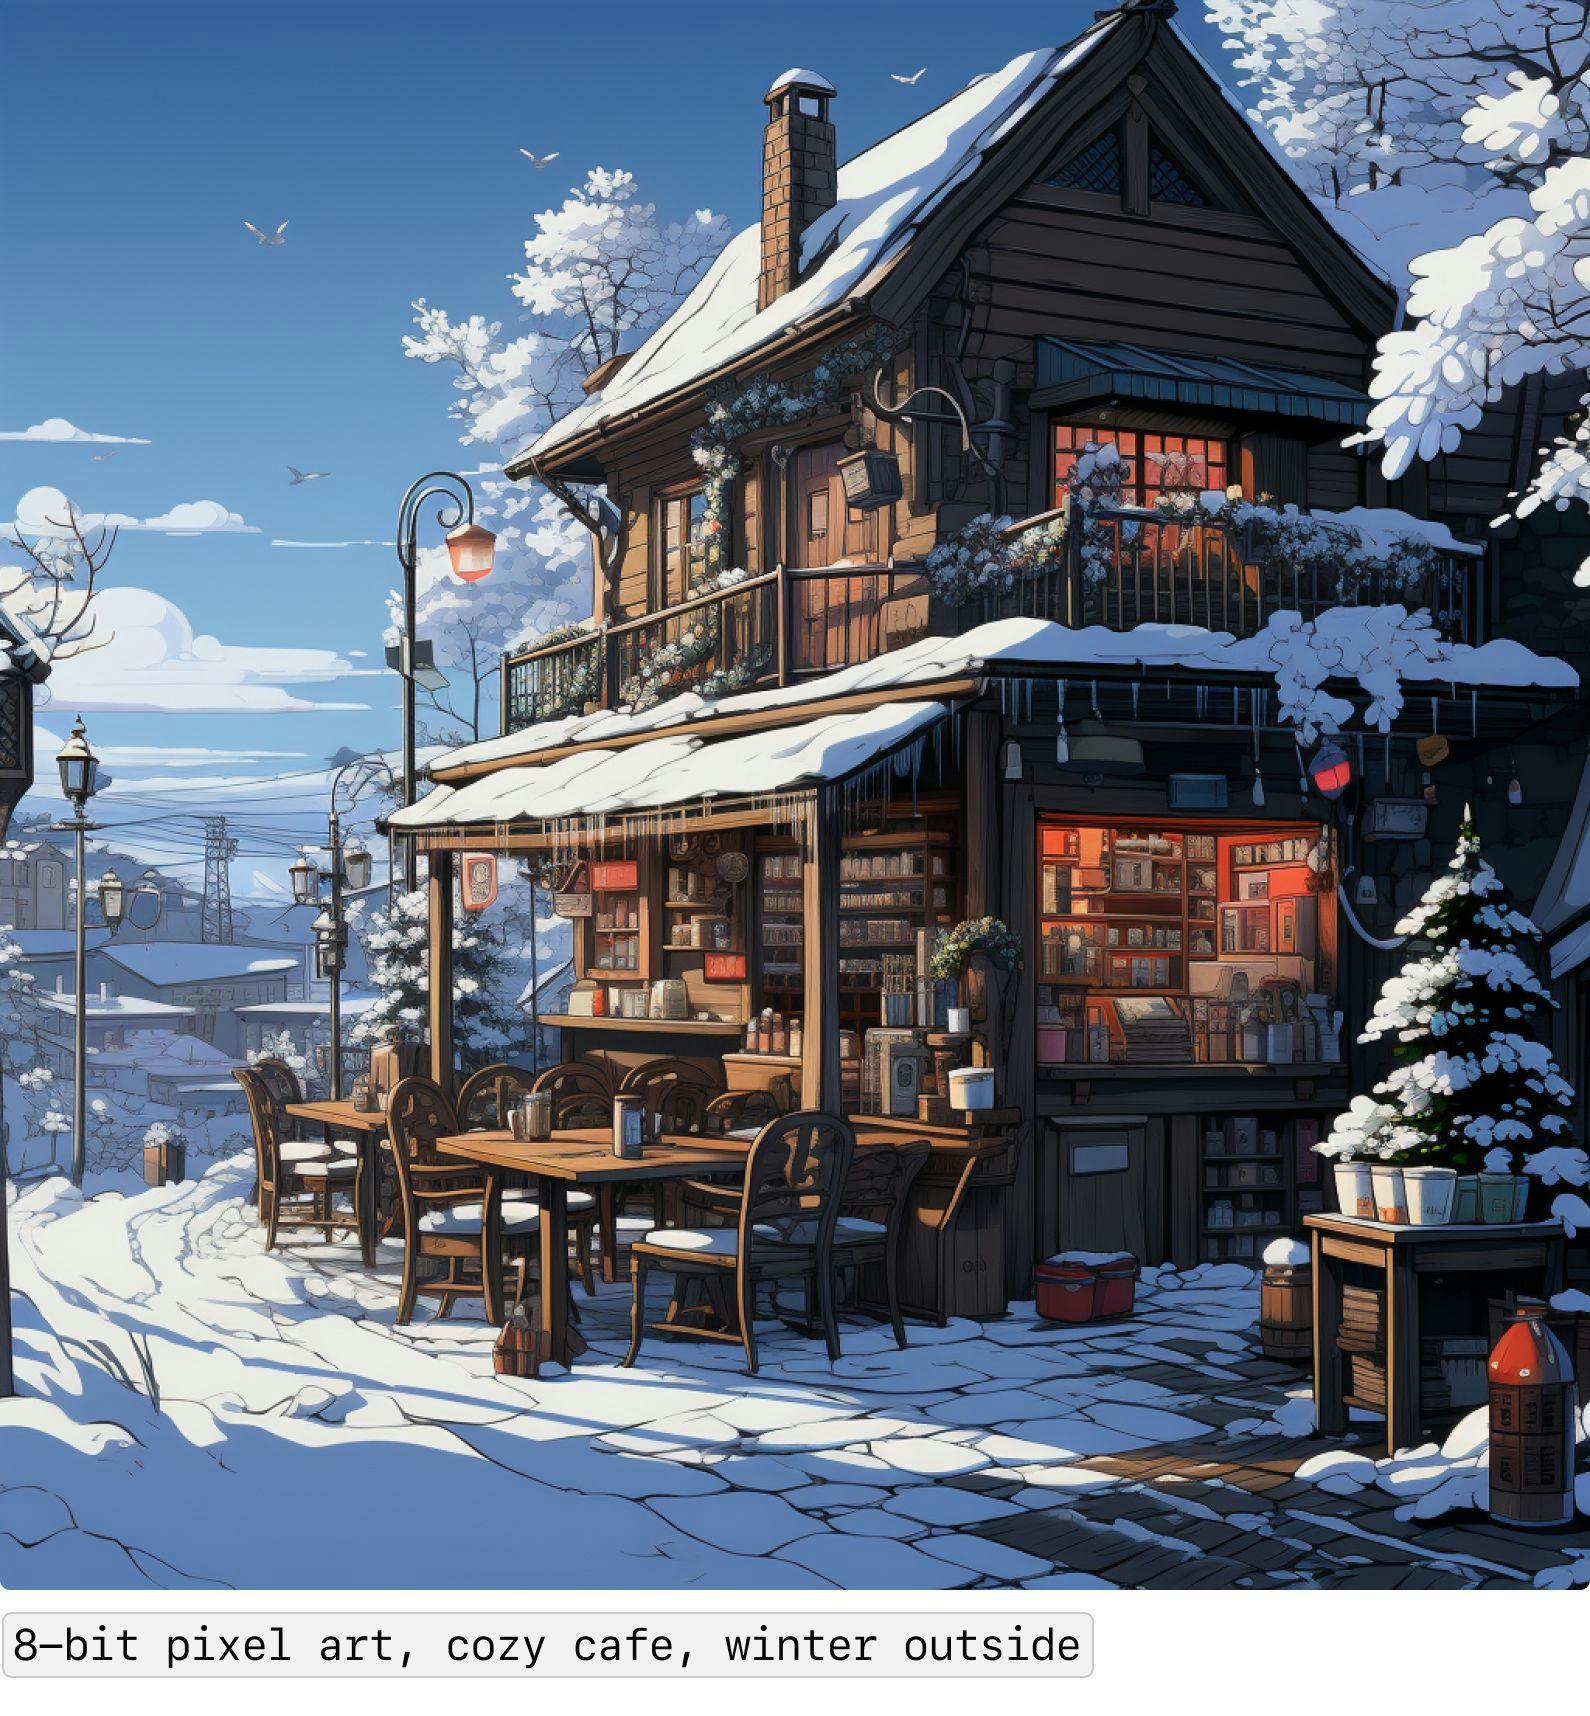 8-bit pixel art, cozy cafe, winter outside